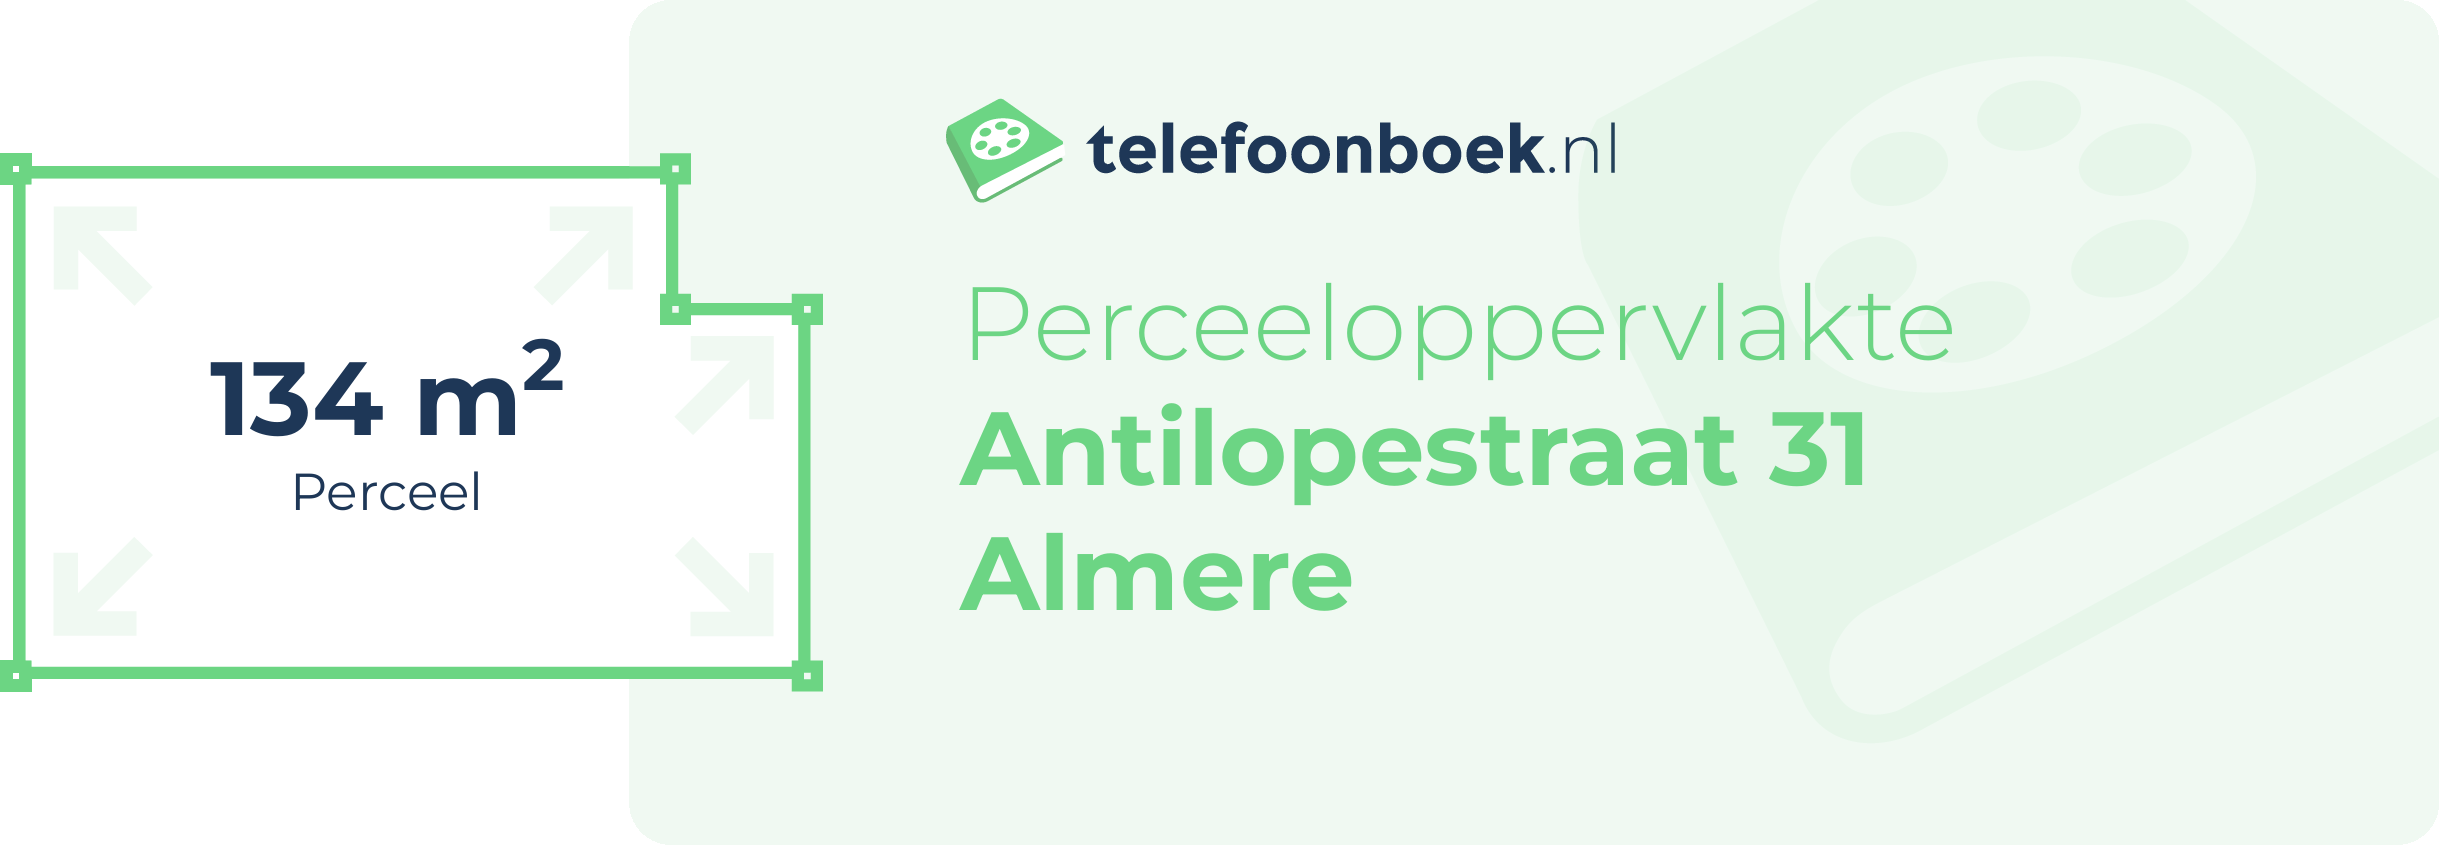 Perceeloppervlakte Antilopestraat 31 Almere